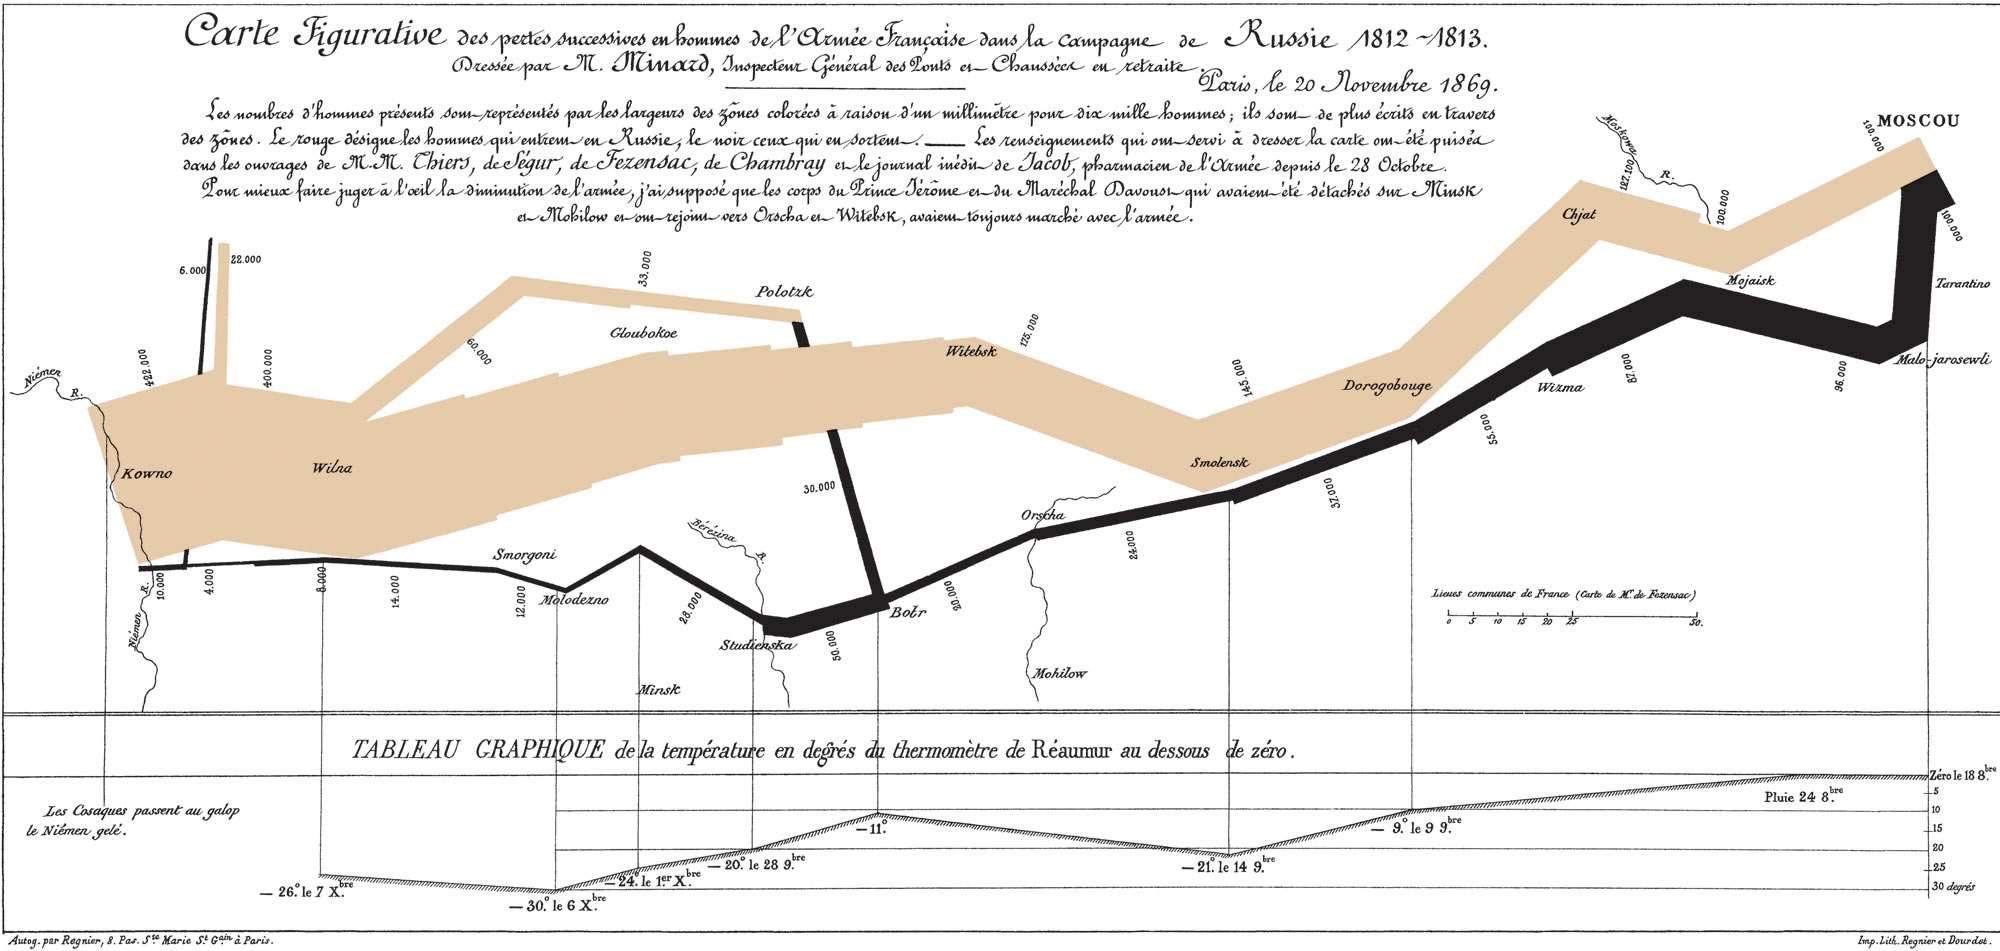 Minards kaart van de Ruslandcampagne van Napoleon in 1812-1813 Waarom is dit wellicht de beste visualisatie aller tijden?